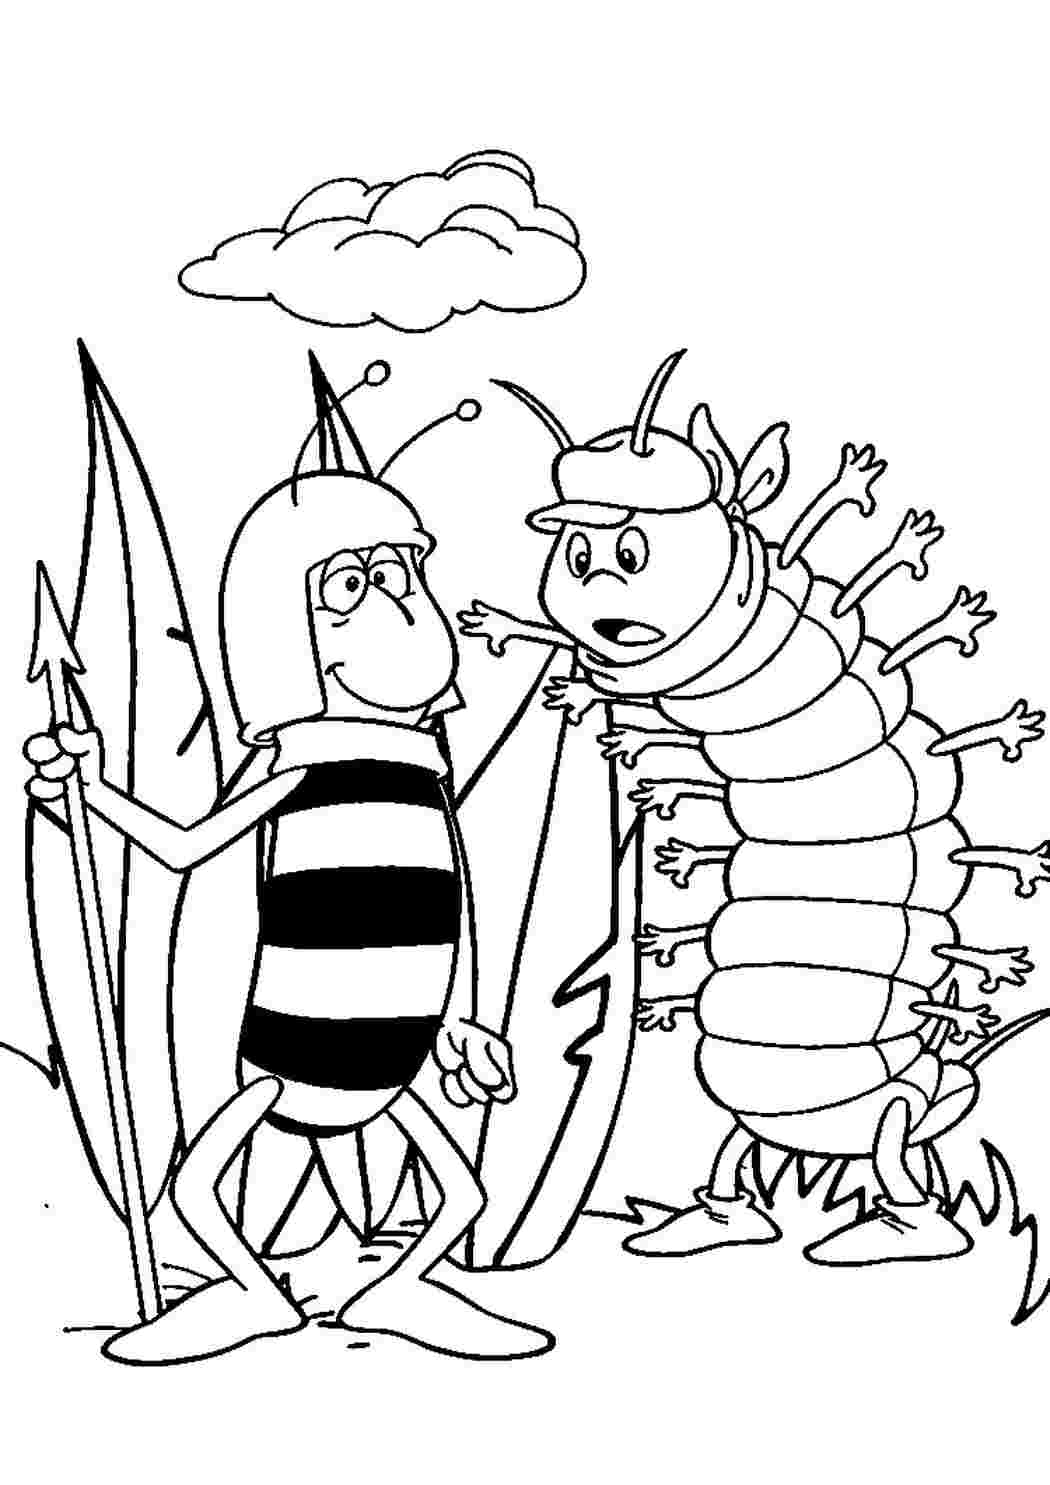 Раскраски Раскраска Раскраска персонажи из мультика пчелка Майя распечатать. Онлайн раскраска. Раскраска Раскраска персонажи из мультика пчелка Майя распечатать. Раскраски для развития.